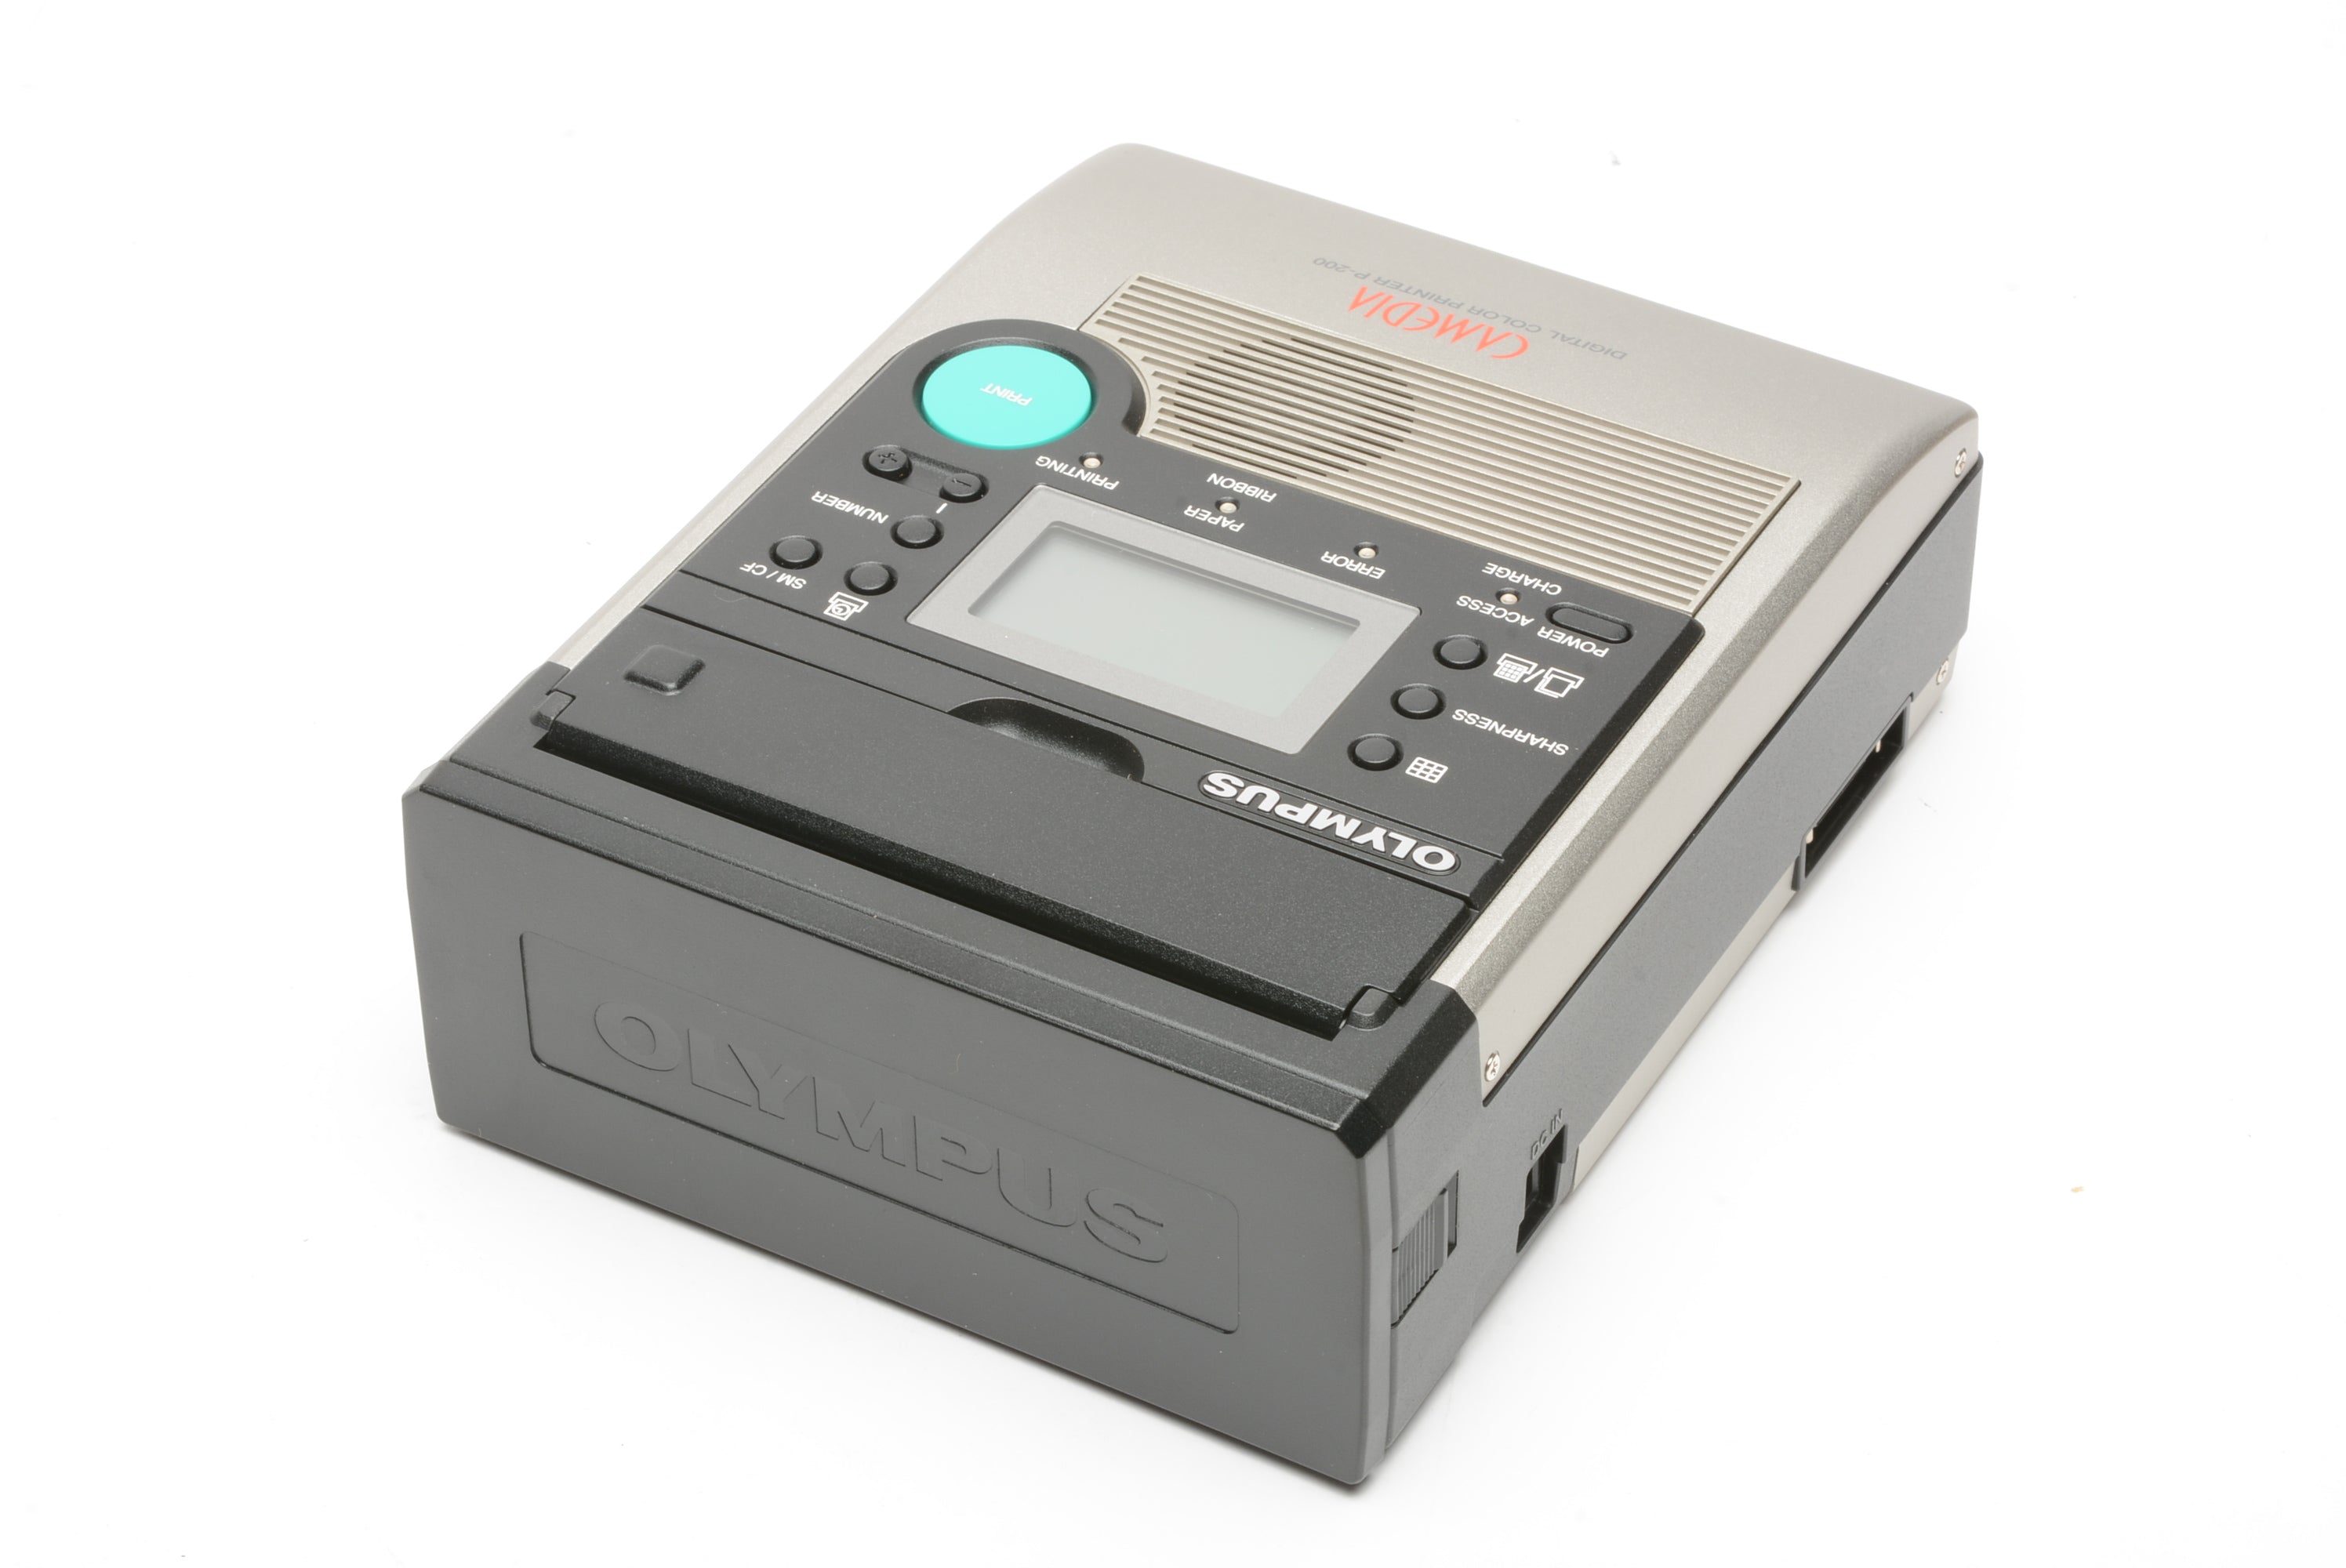 Olympus Digital Portable P-200 Printer, Boxed